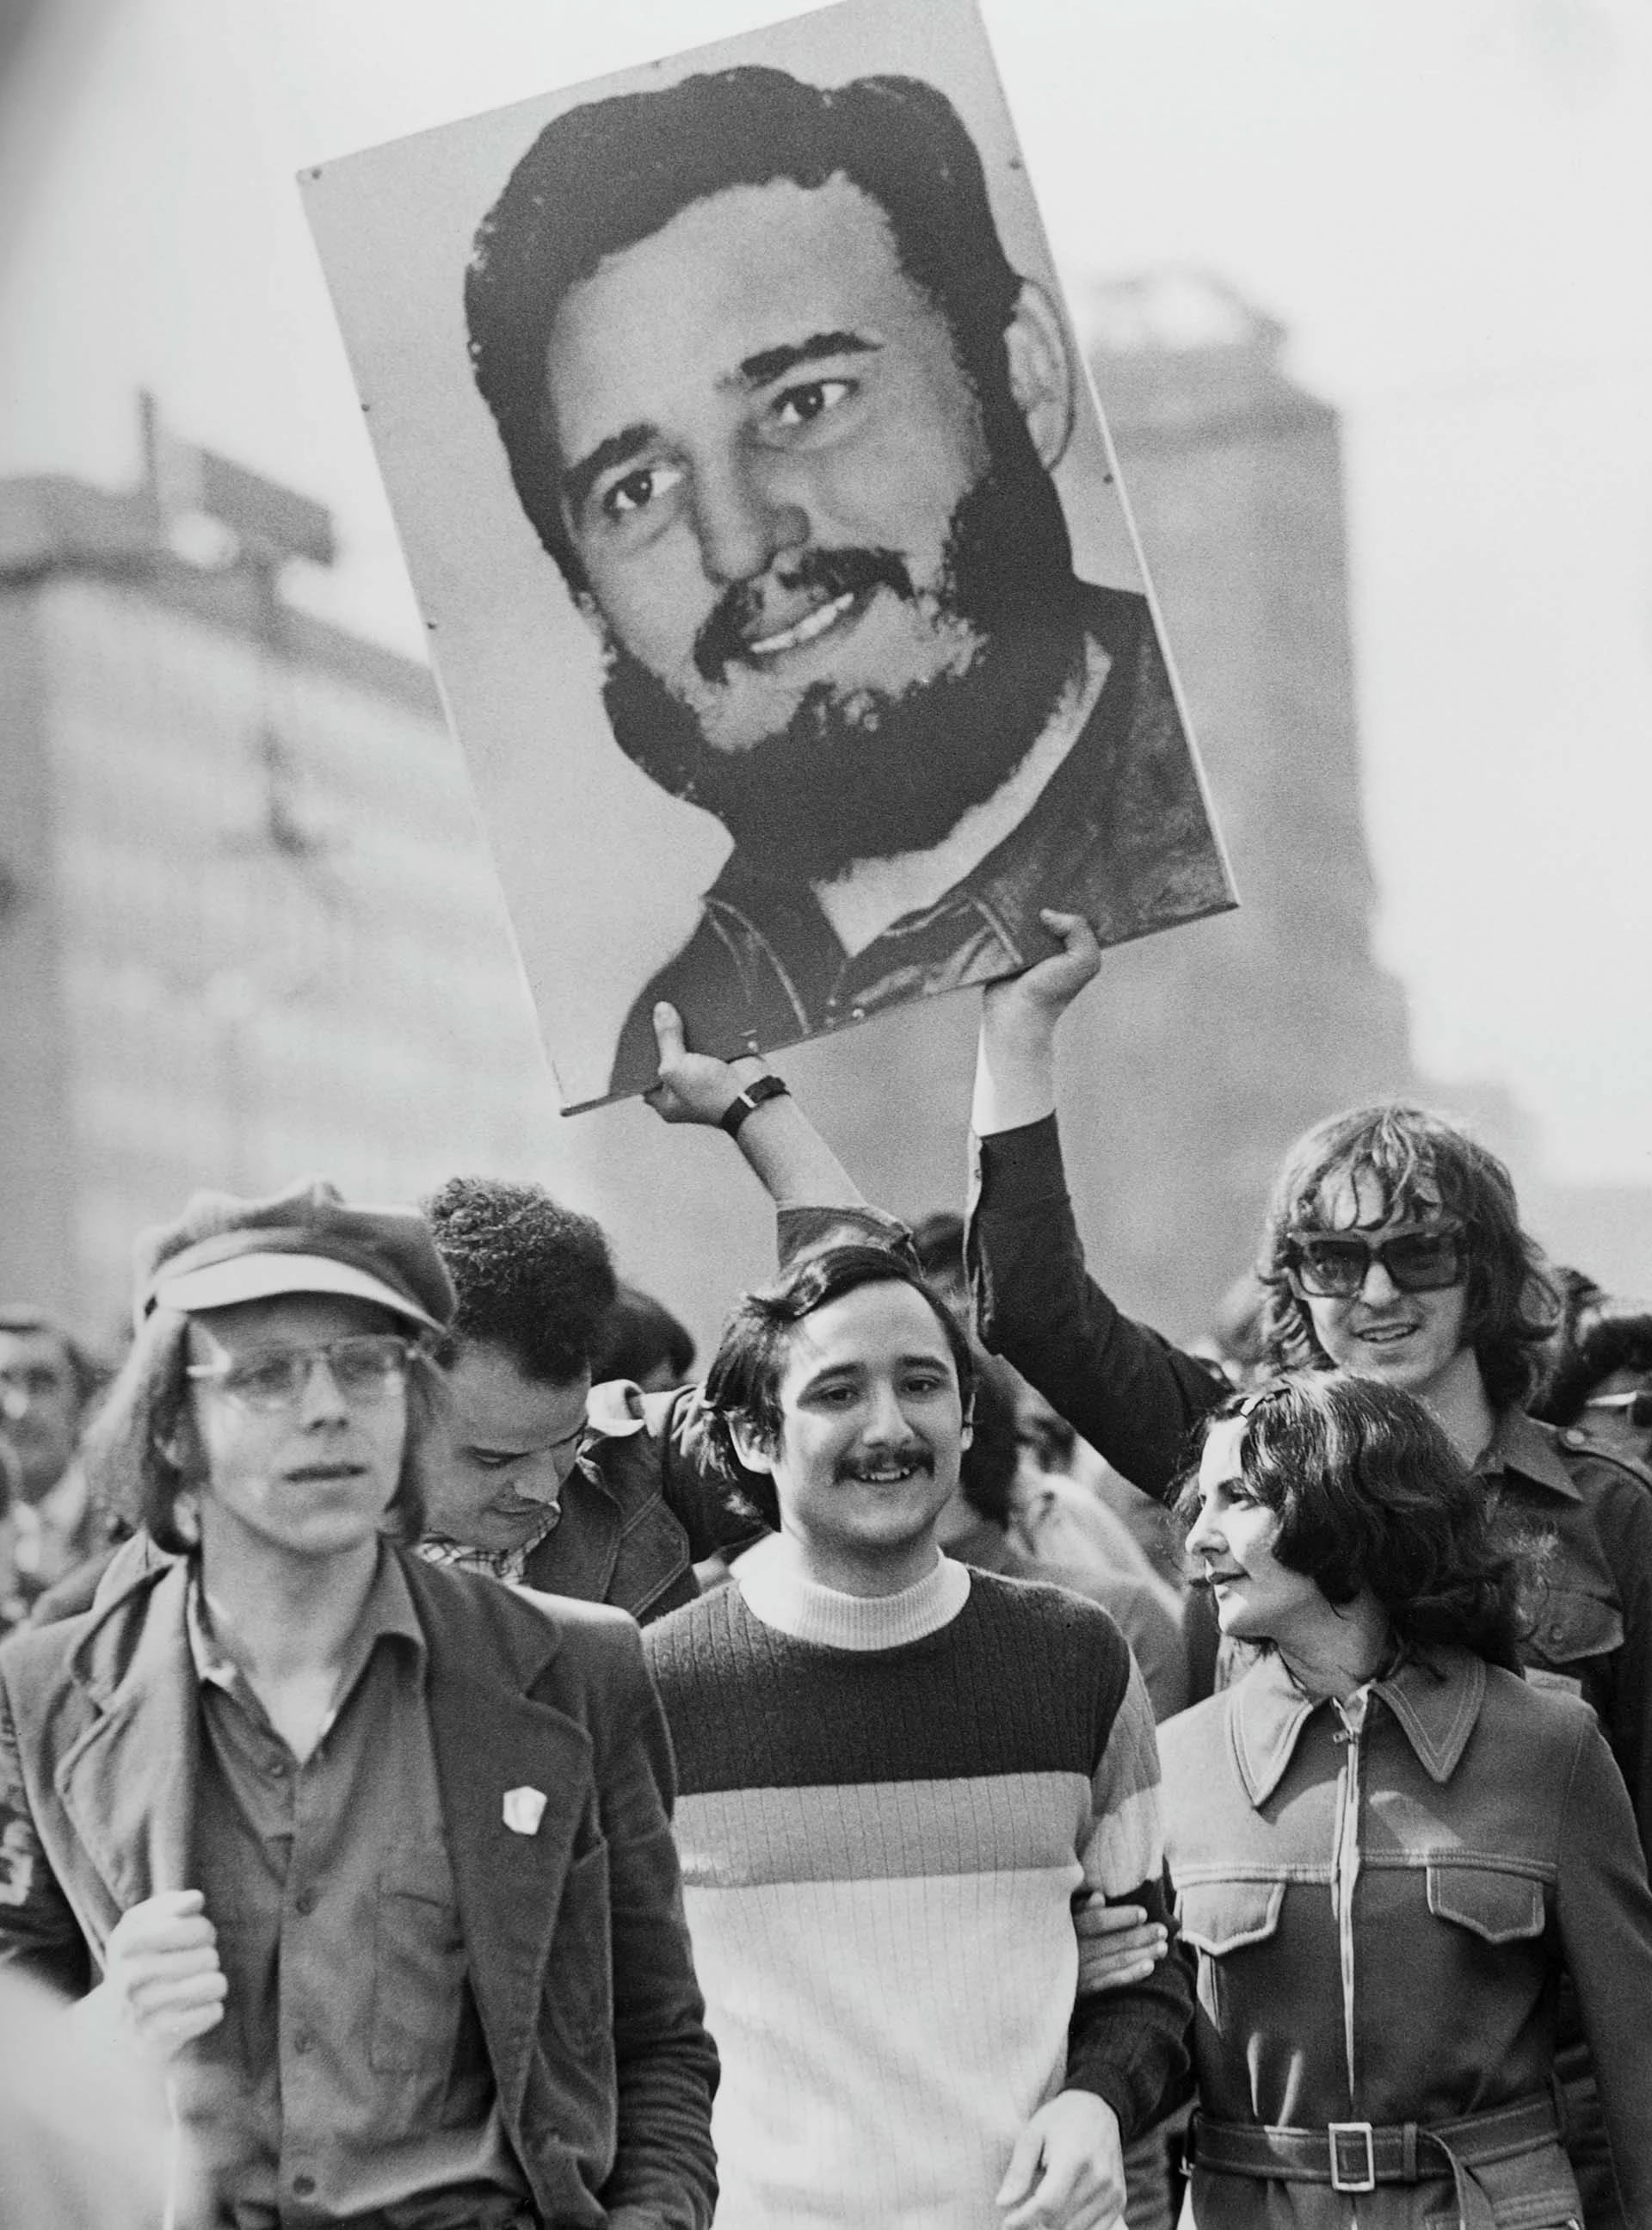 Primero de mayo de 1975, alemanes del Este sostienen una pancarta con la cara de Fidel Castro (Photo by Michael Nitzschke/Shutterstock)
